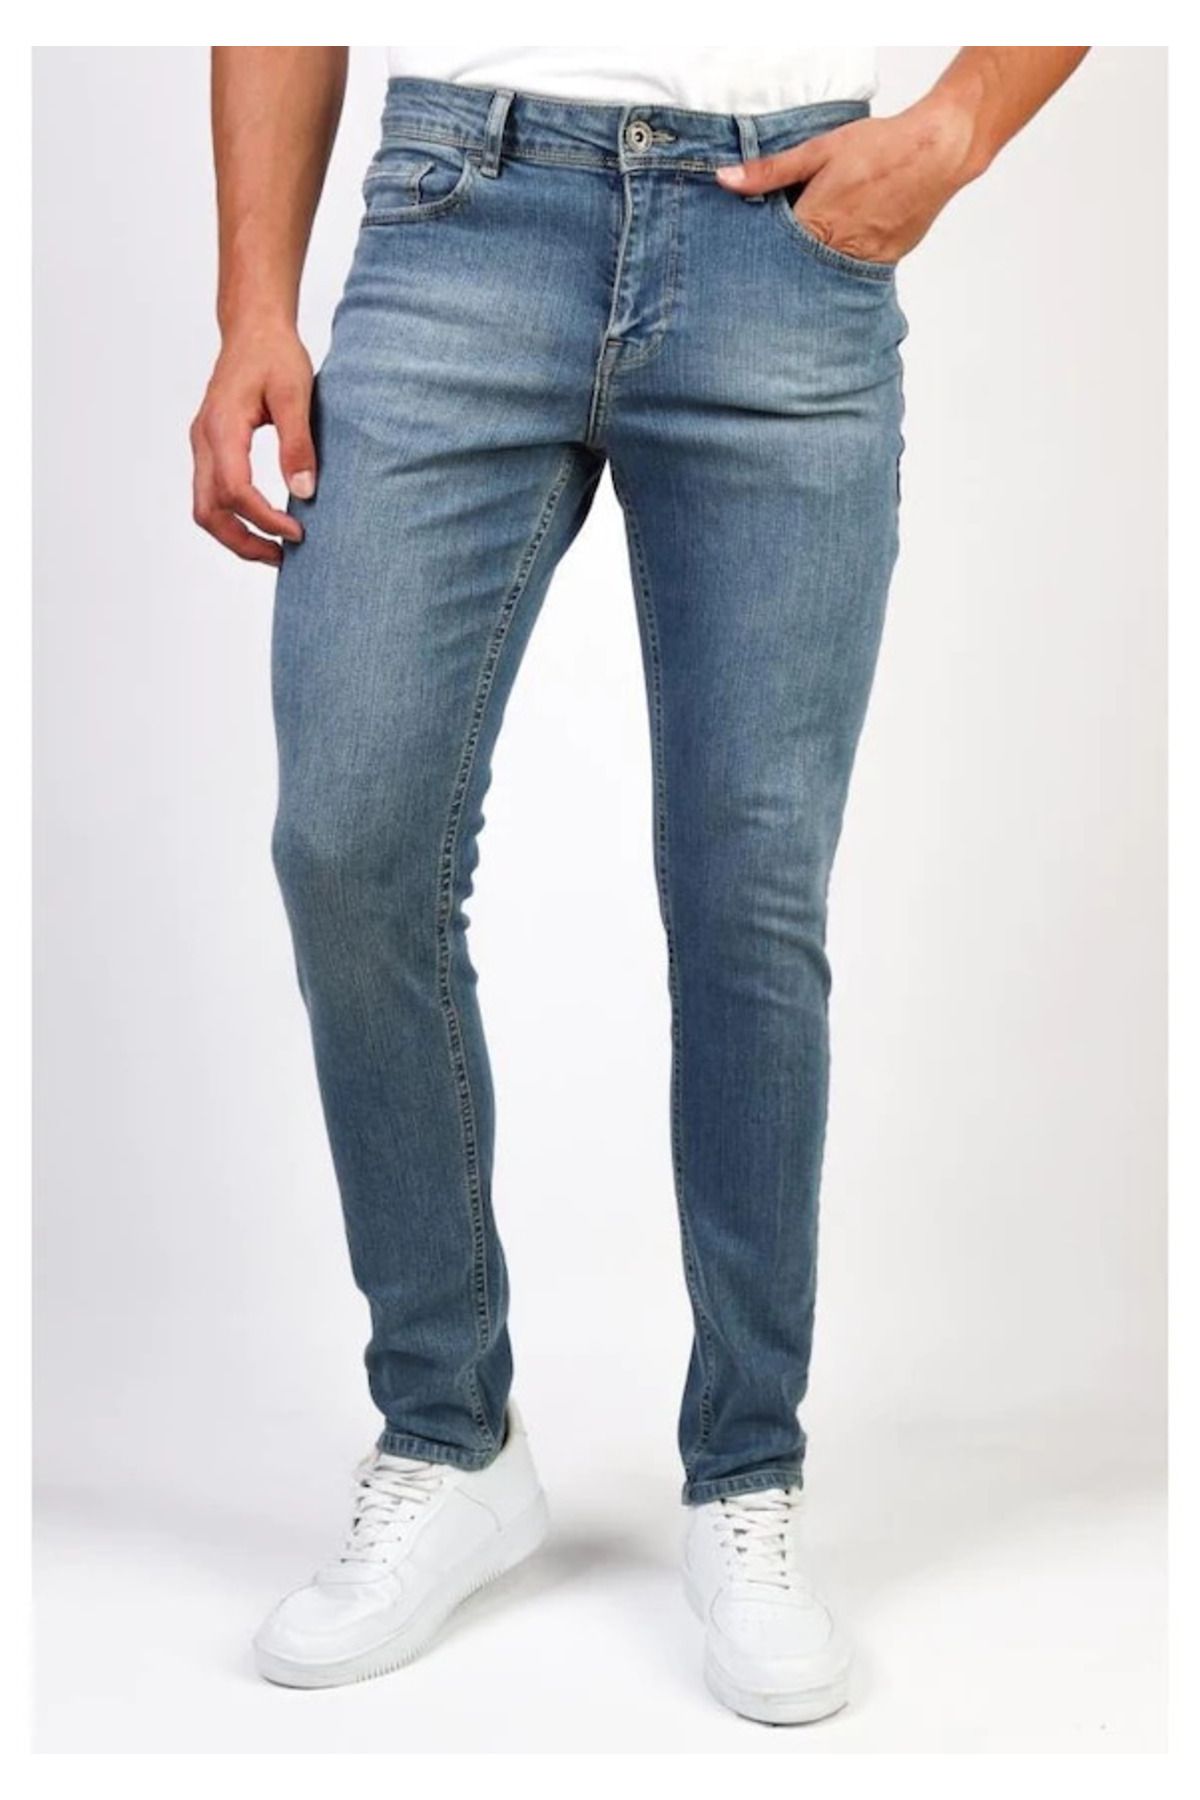 HLT JEANS Erkek Açık Mavi Taşlamalı Slim Fit Denim Jeans Kot Pantolon Hlthe001943a